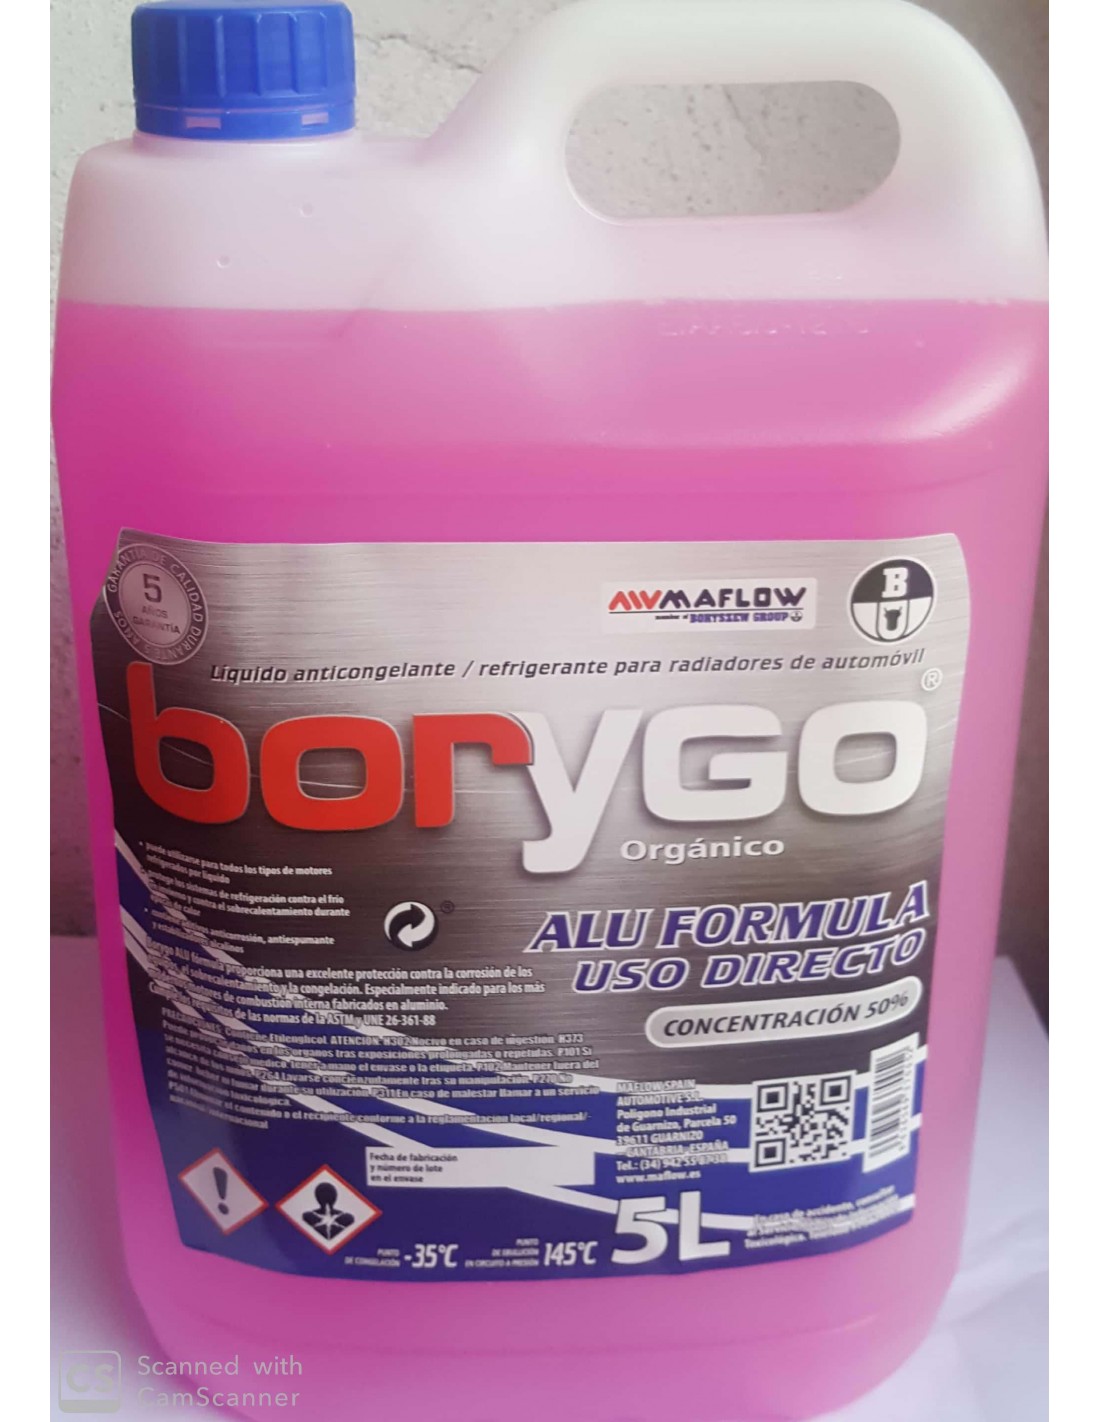 los padres de crianza Experto Subir Anticongelante Refrigerante rosa Borygo Alu Formula 50% 5L